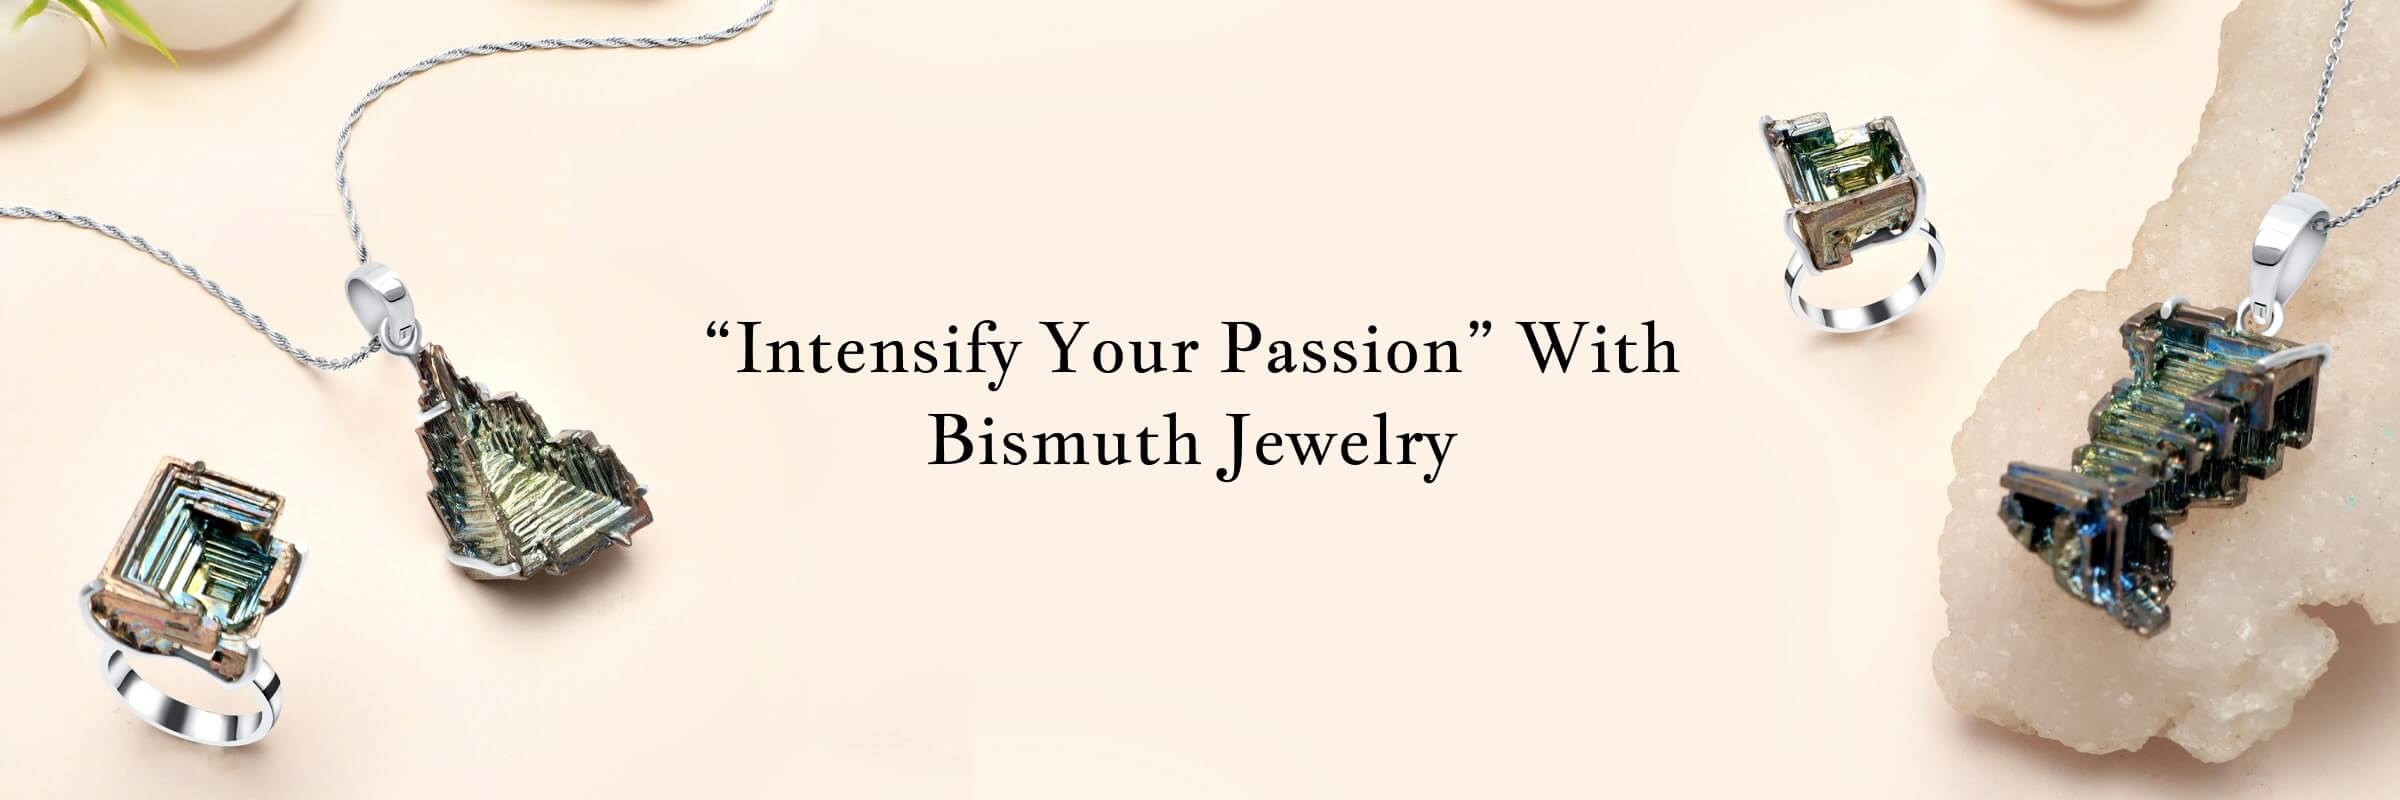 bismuth2